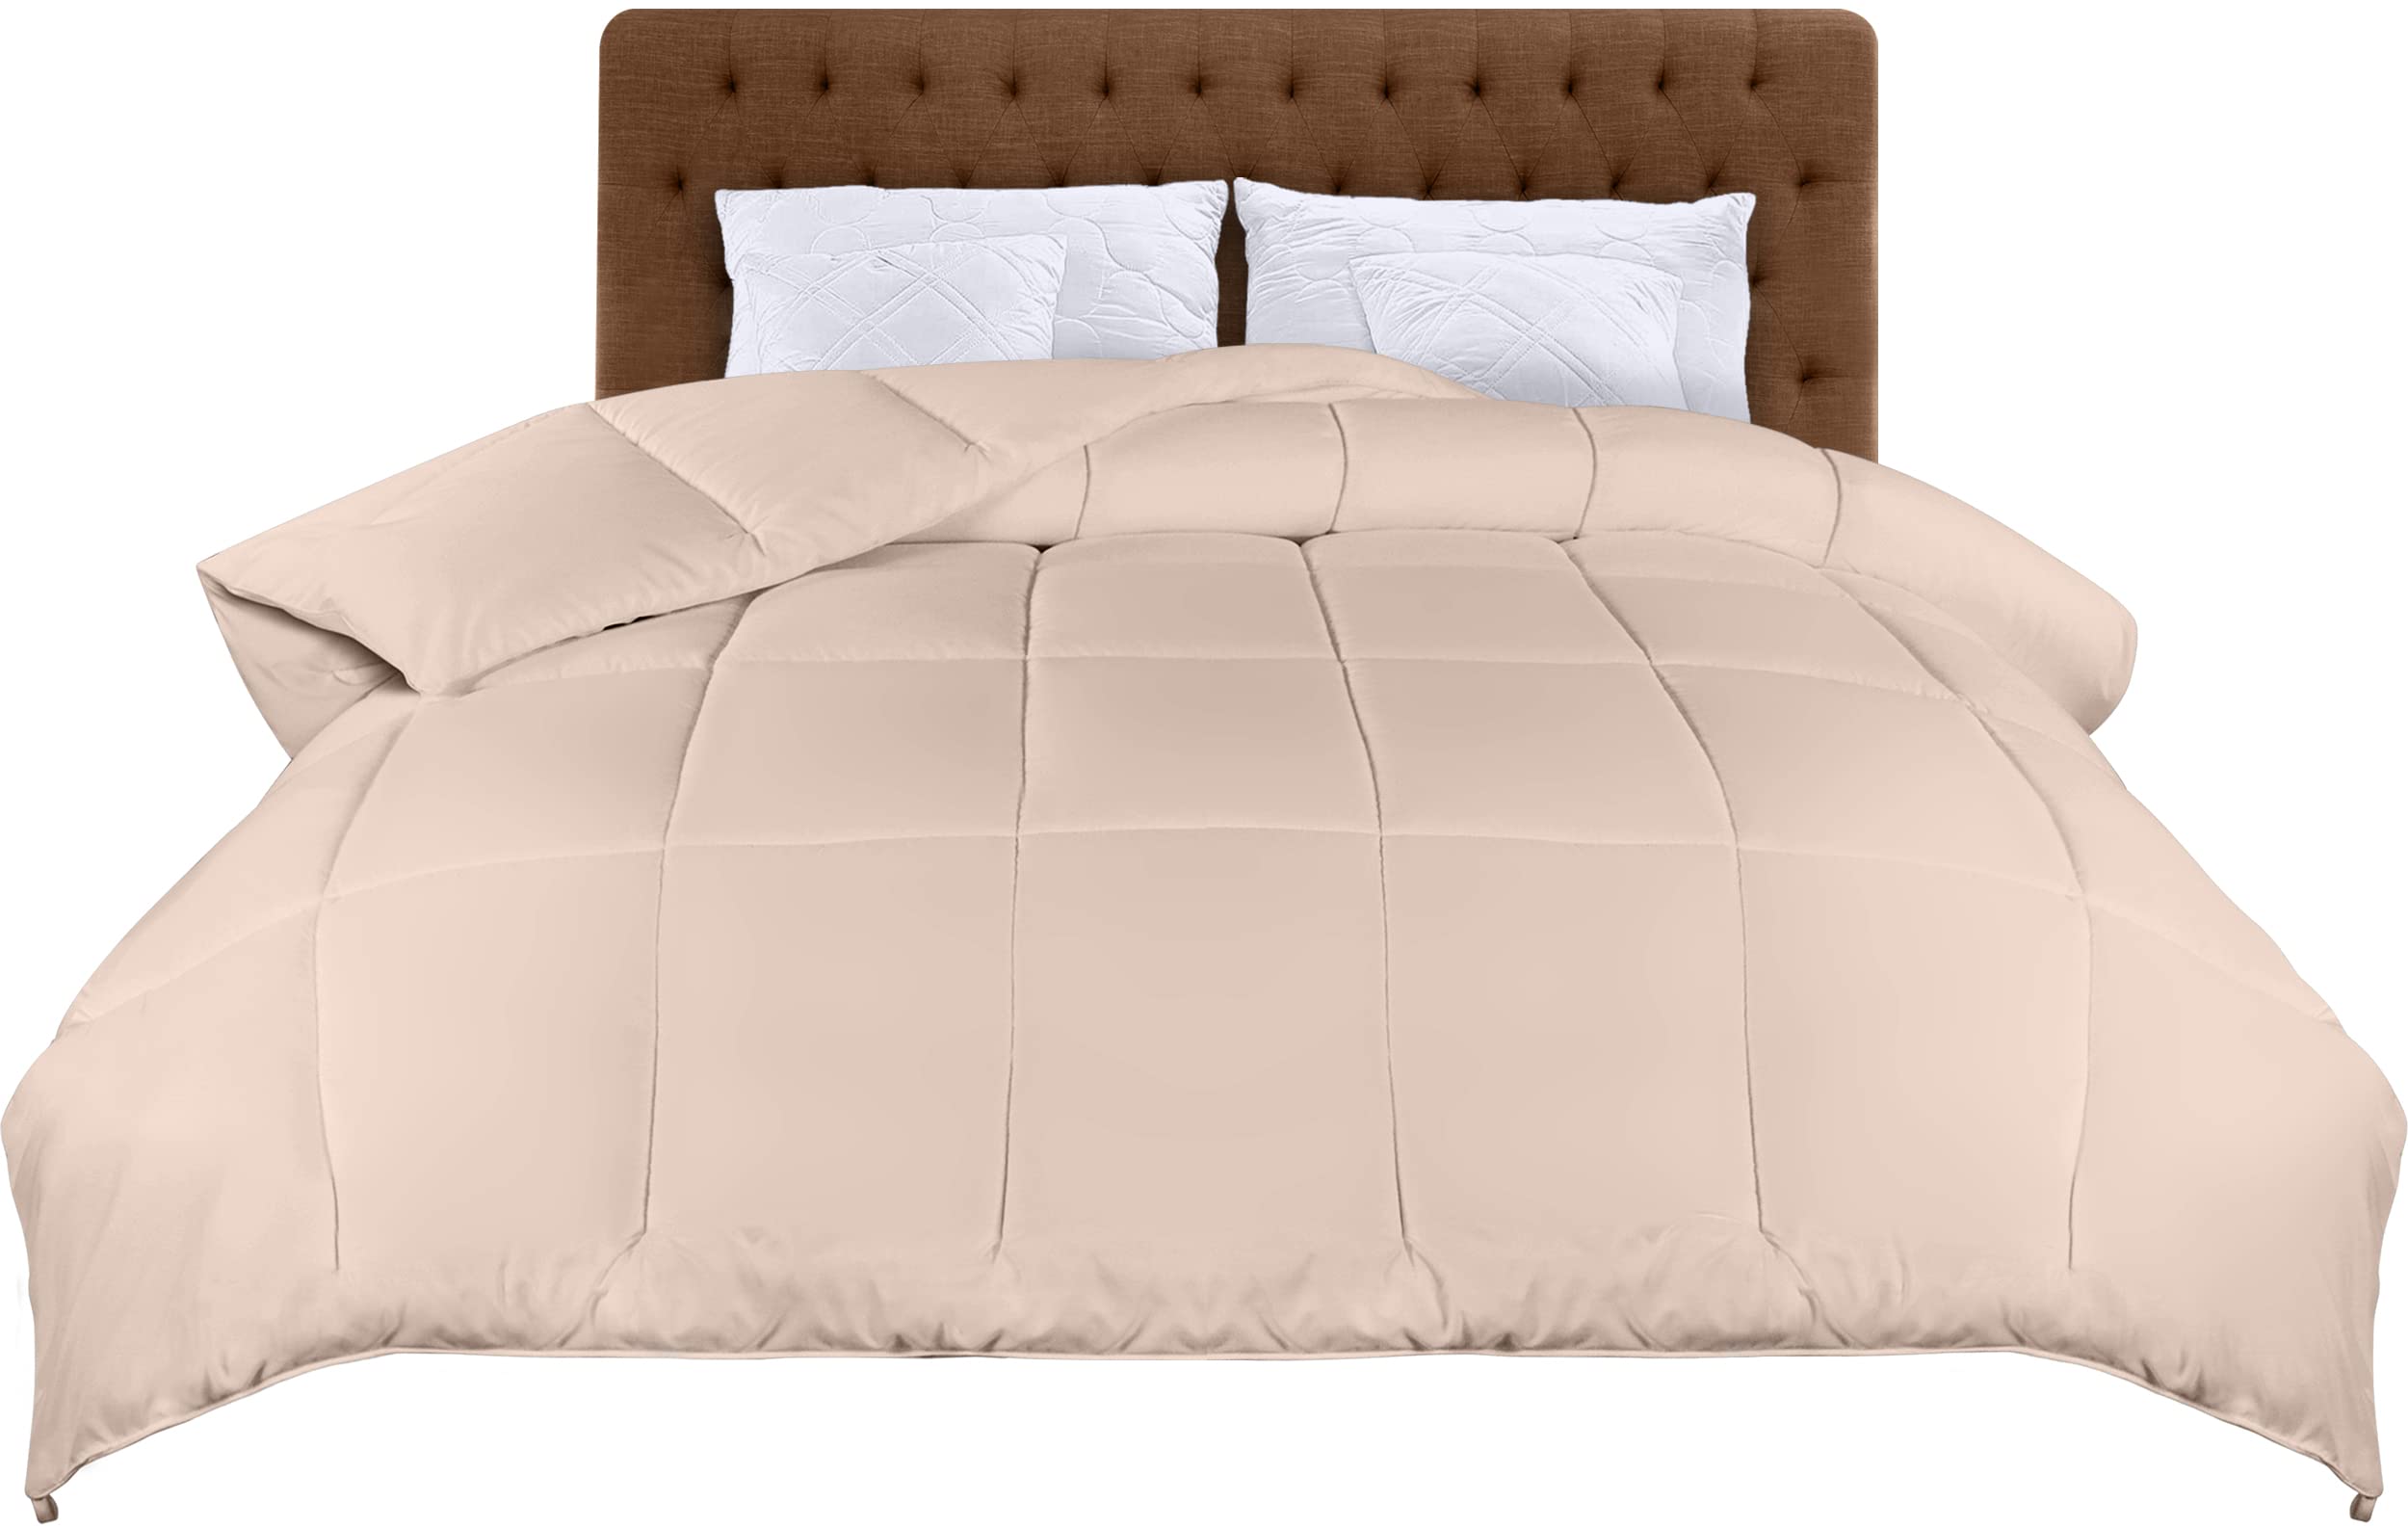 luxe  Utopia Bedding Couette 220 x 240 cm, Couette légère avec Rembourrage en Polyester pour 4 Saisons, Microfibre Couette 2 Personnes (Beige) X8o1kpJbr en ligne